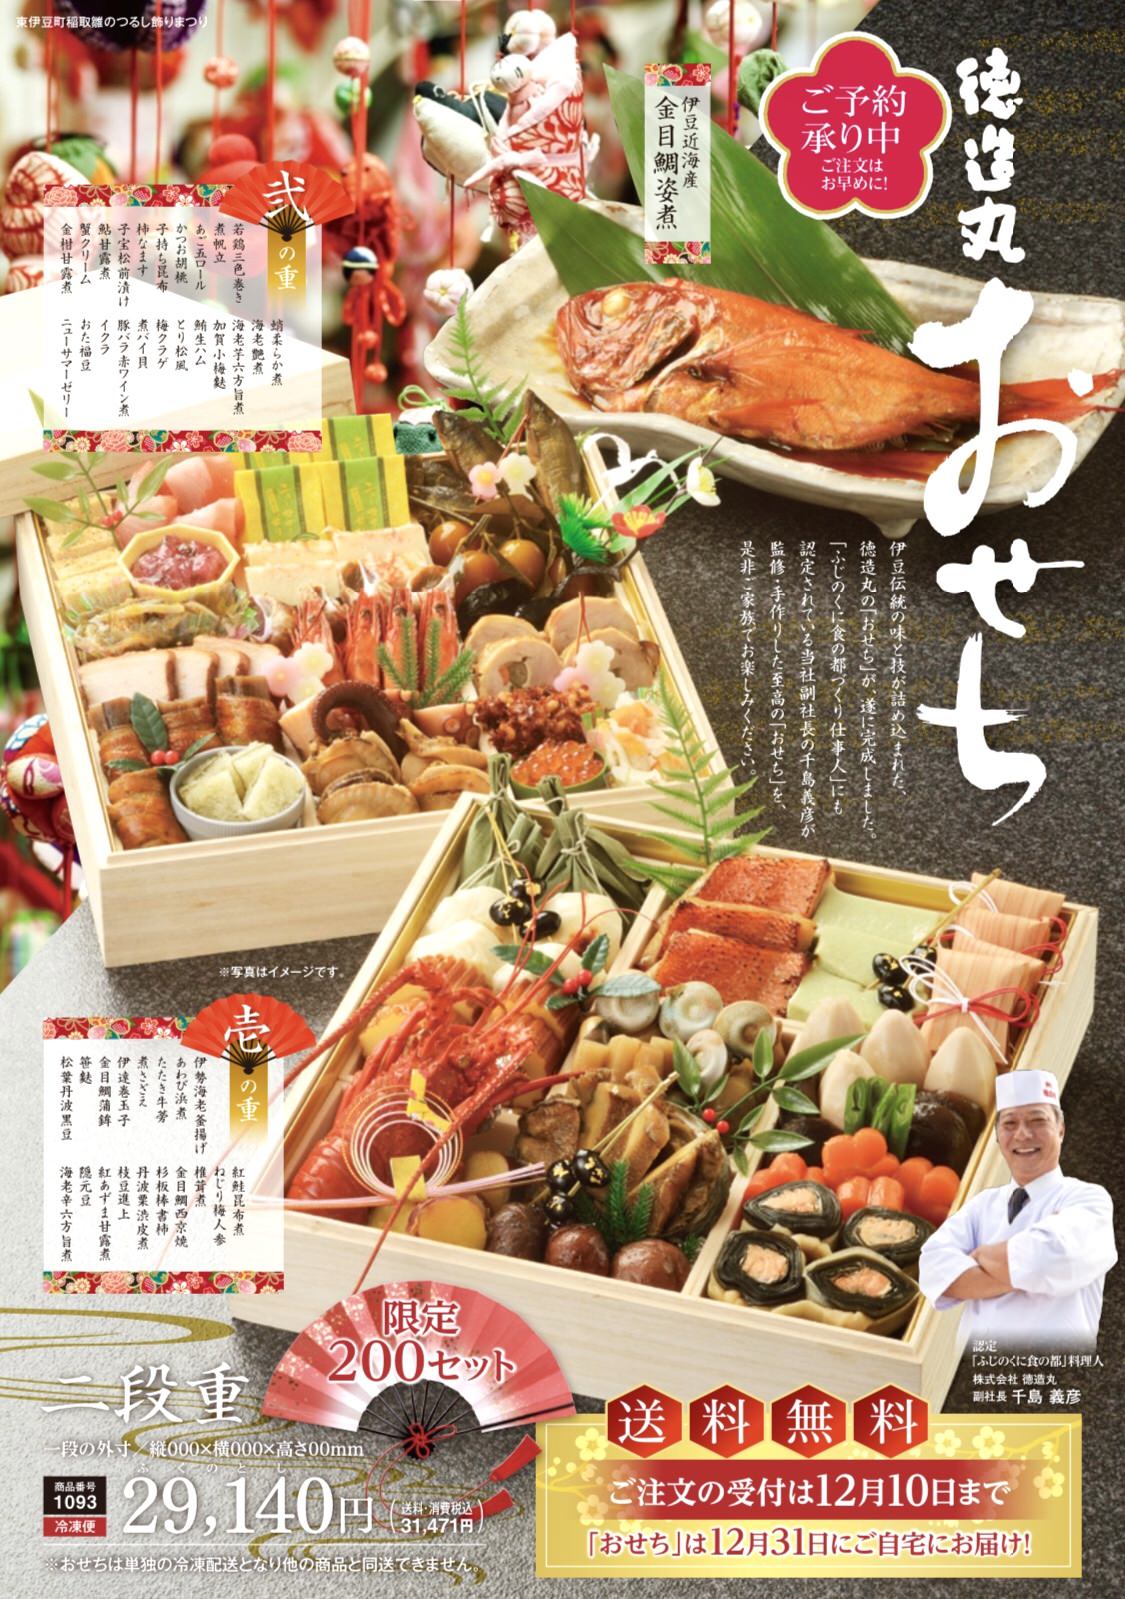 日本でここだけ！？千葉県発の食パン専門店がつくる、
ピーナッツとレーズンの食パンがオープンから連日完売に！！